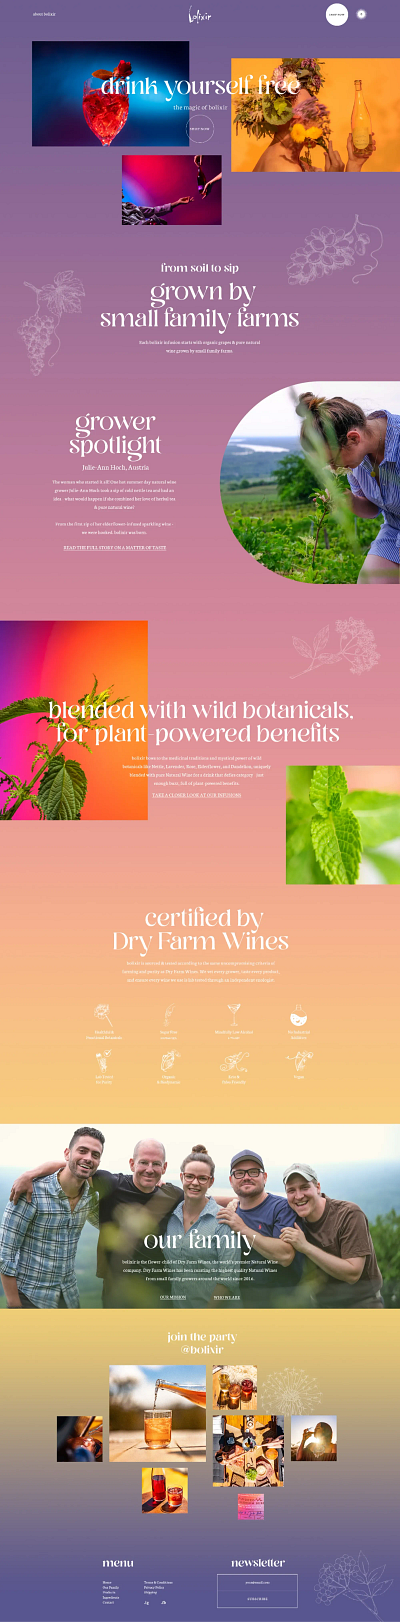 Bolixir Case Study beverages botanical development drinks ecommerce lavander nature pink purple shopify startup ux web design website wine